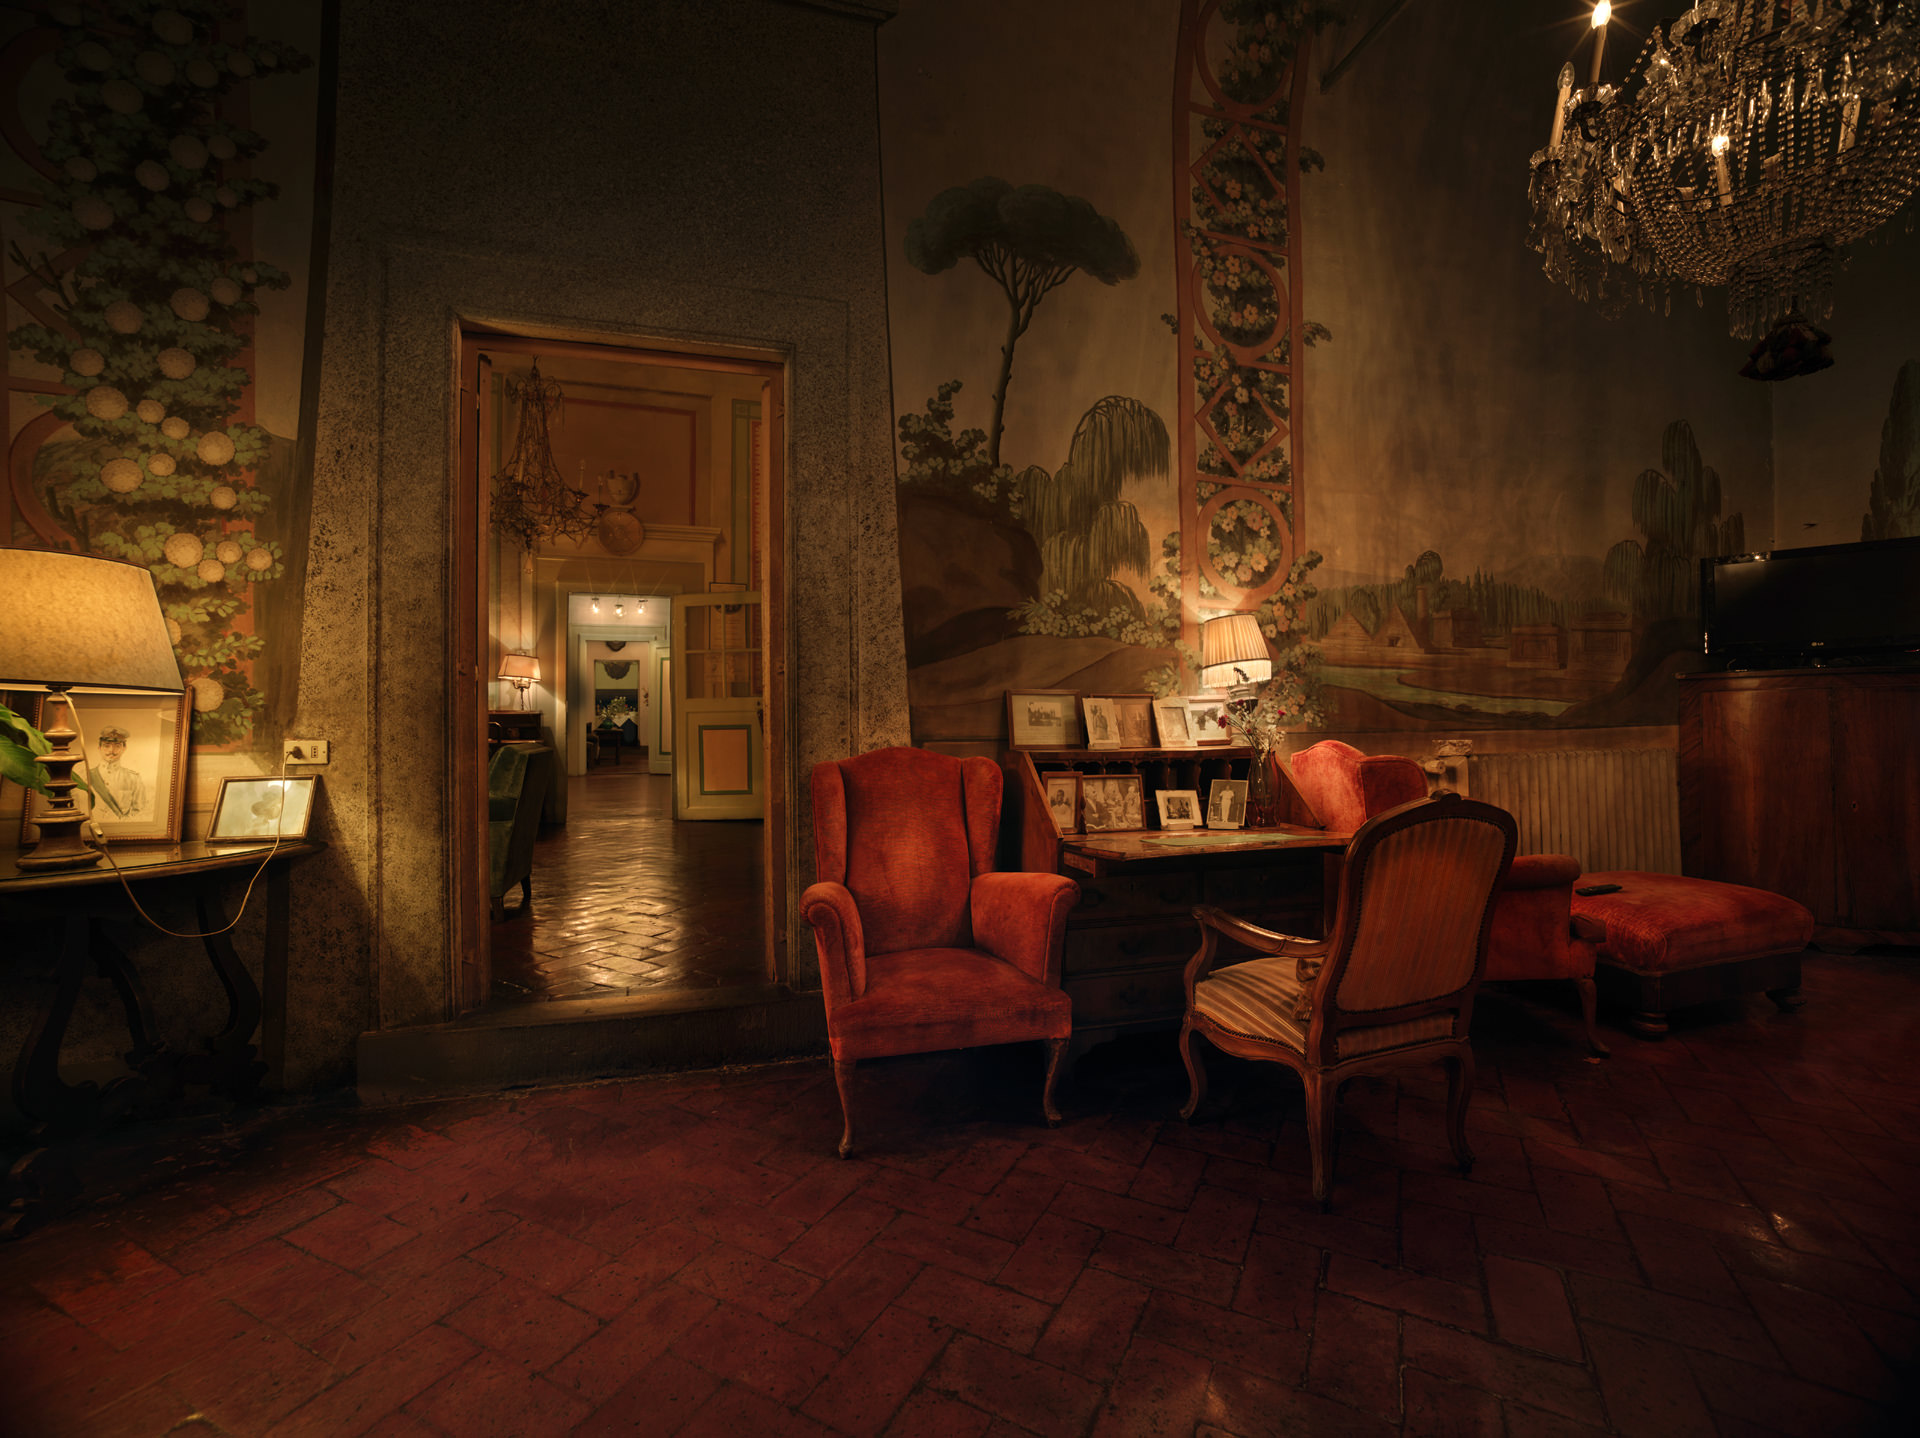 ©ankeluckmann1338, Villa Villoresi Hotel, Architecture, Interior, Italy, anke luckmann, interior